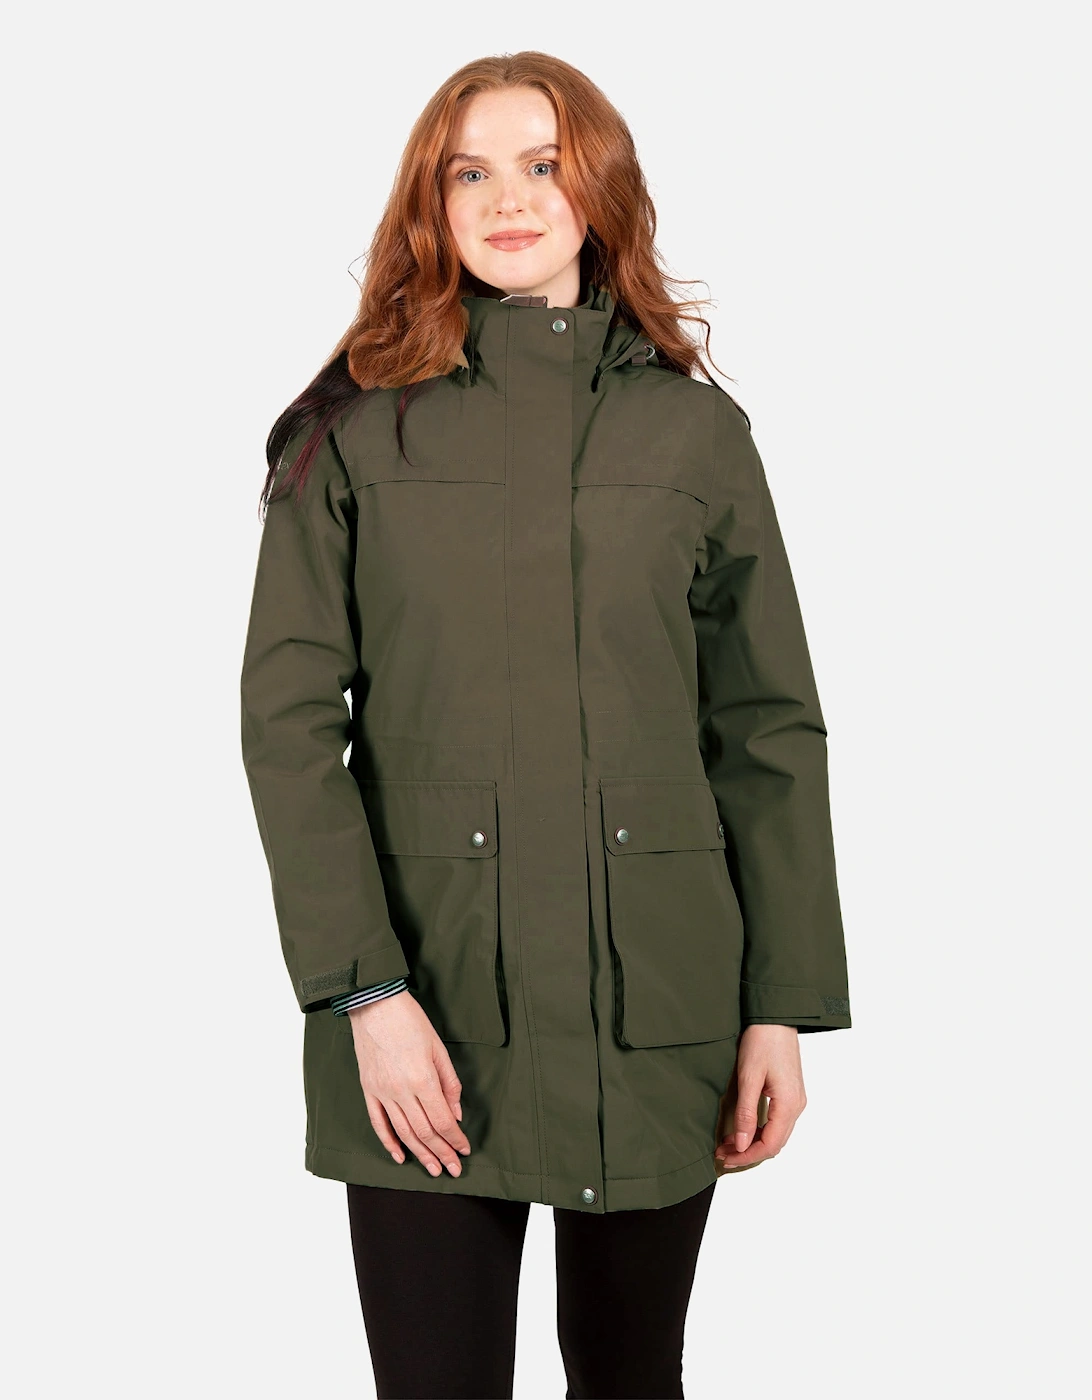 Womens/Ladies Modesty TP75 Waterproof Jacket